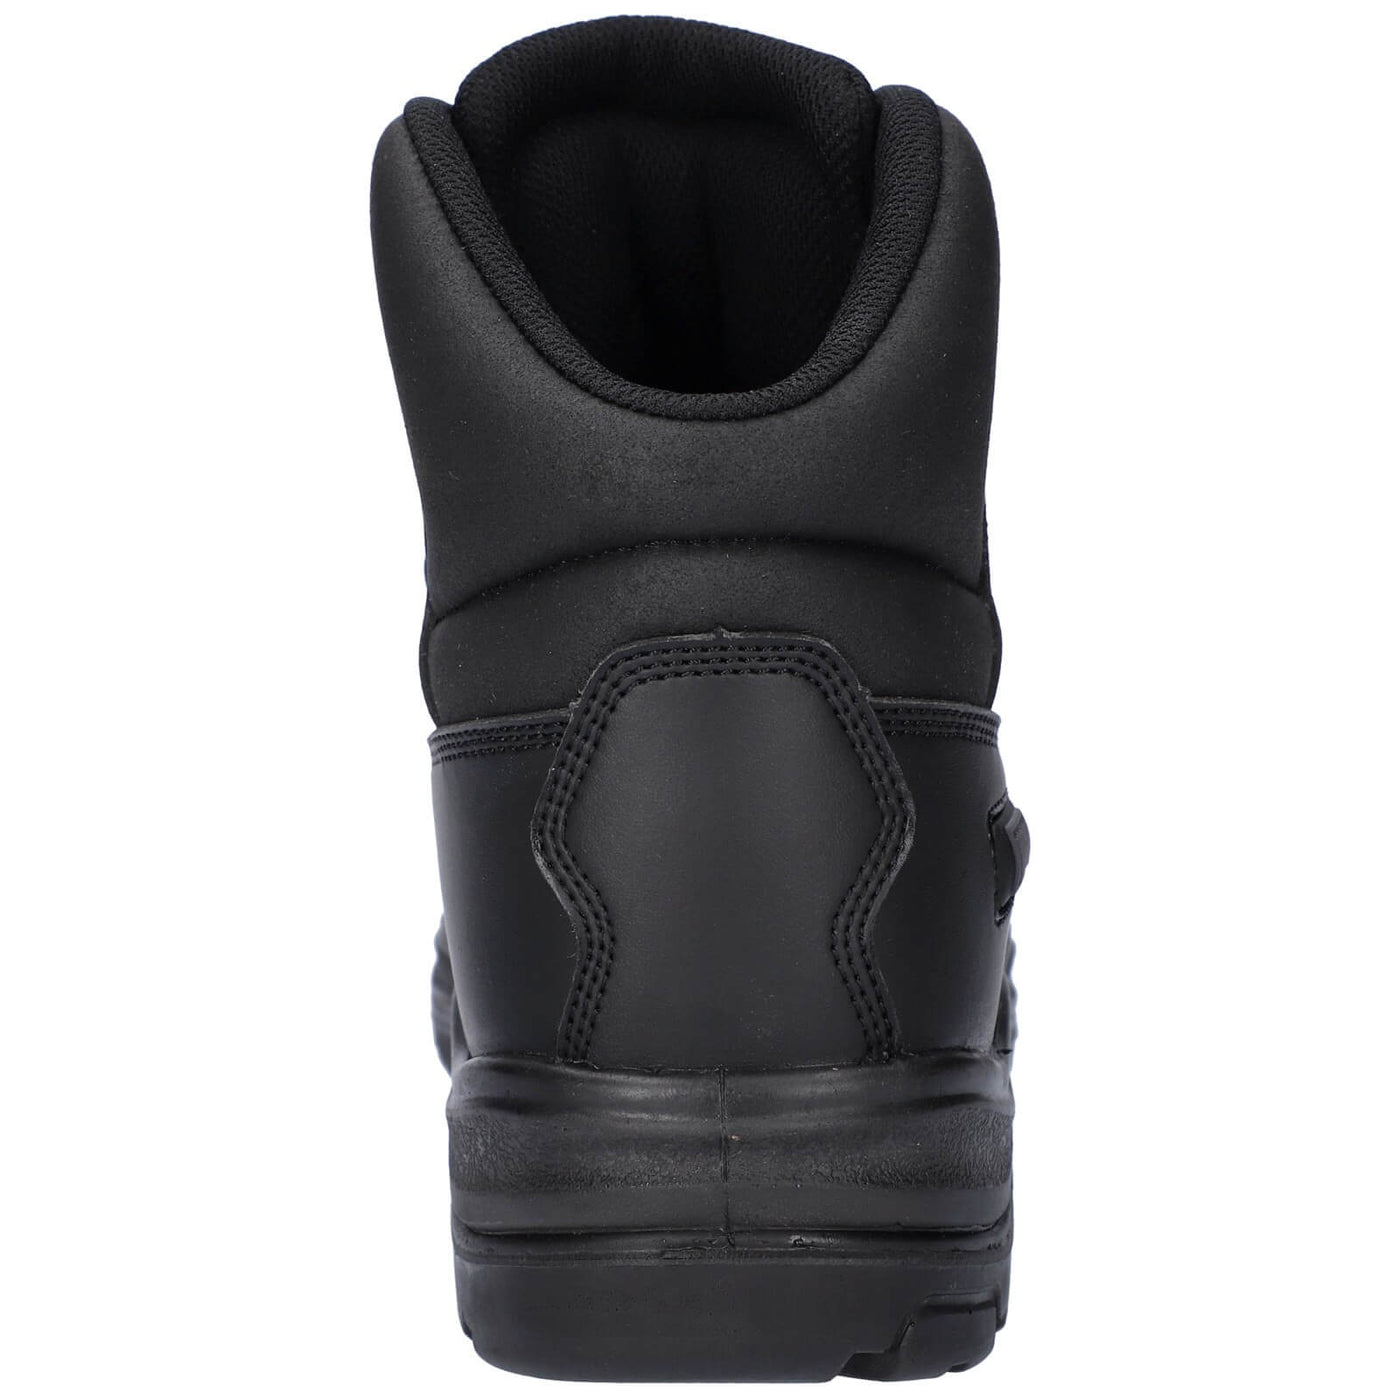 Amblers 241 Safety Boots Black 6#colour_black